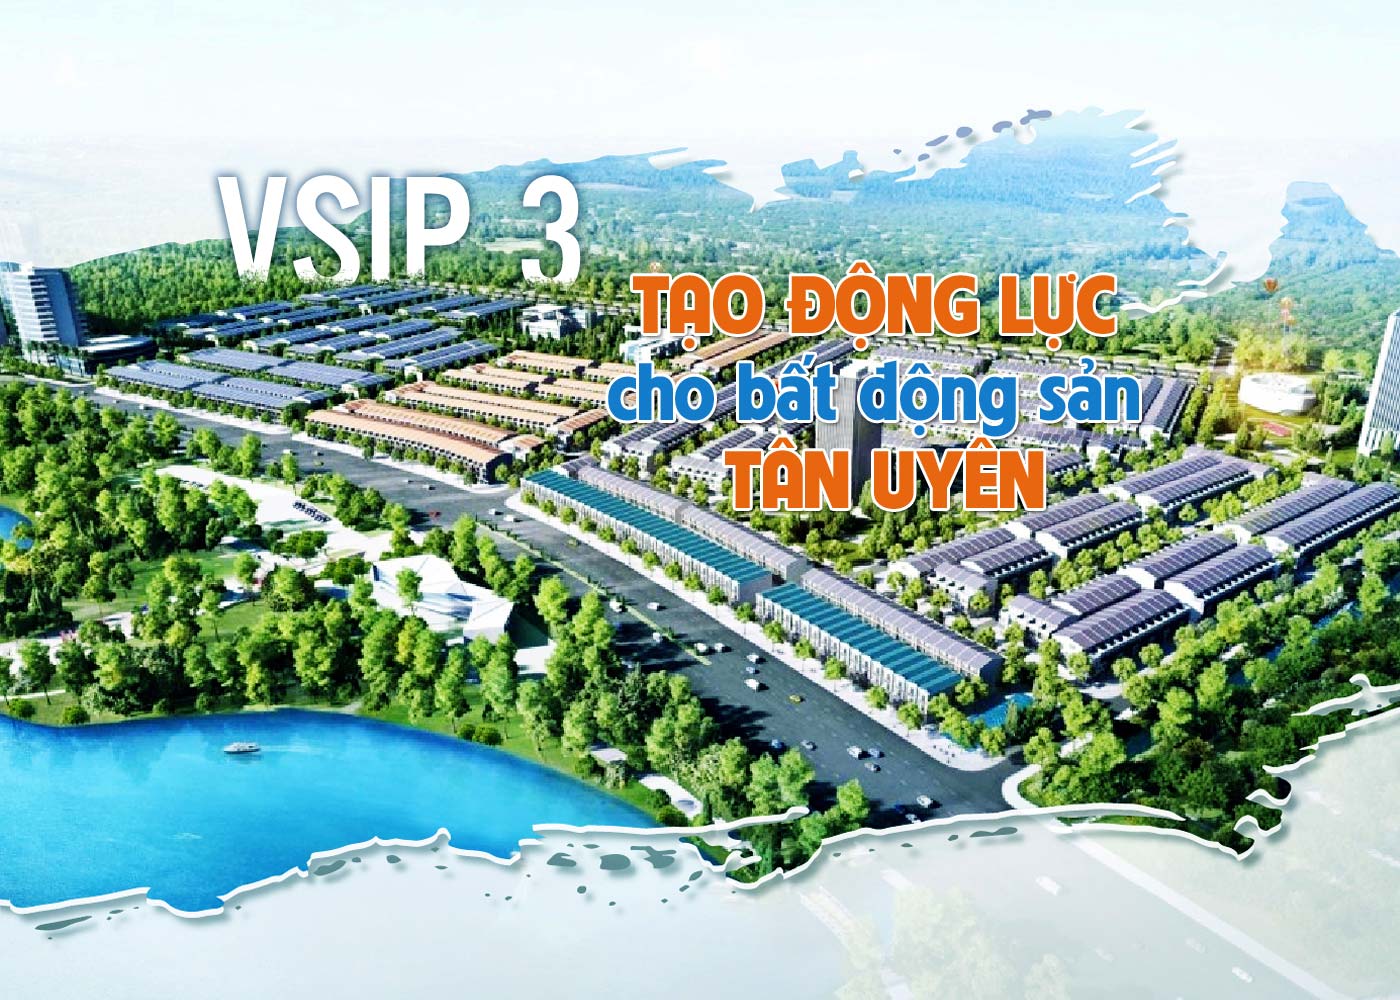 VSIP 3 tạo động lực cho bất động sản Tân Uyên - ảnh 1